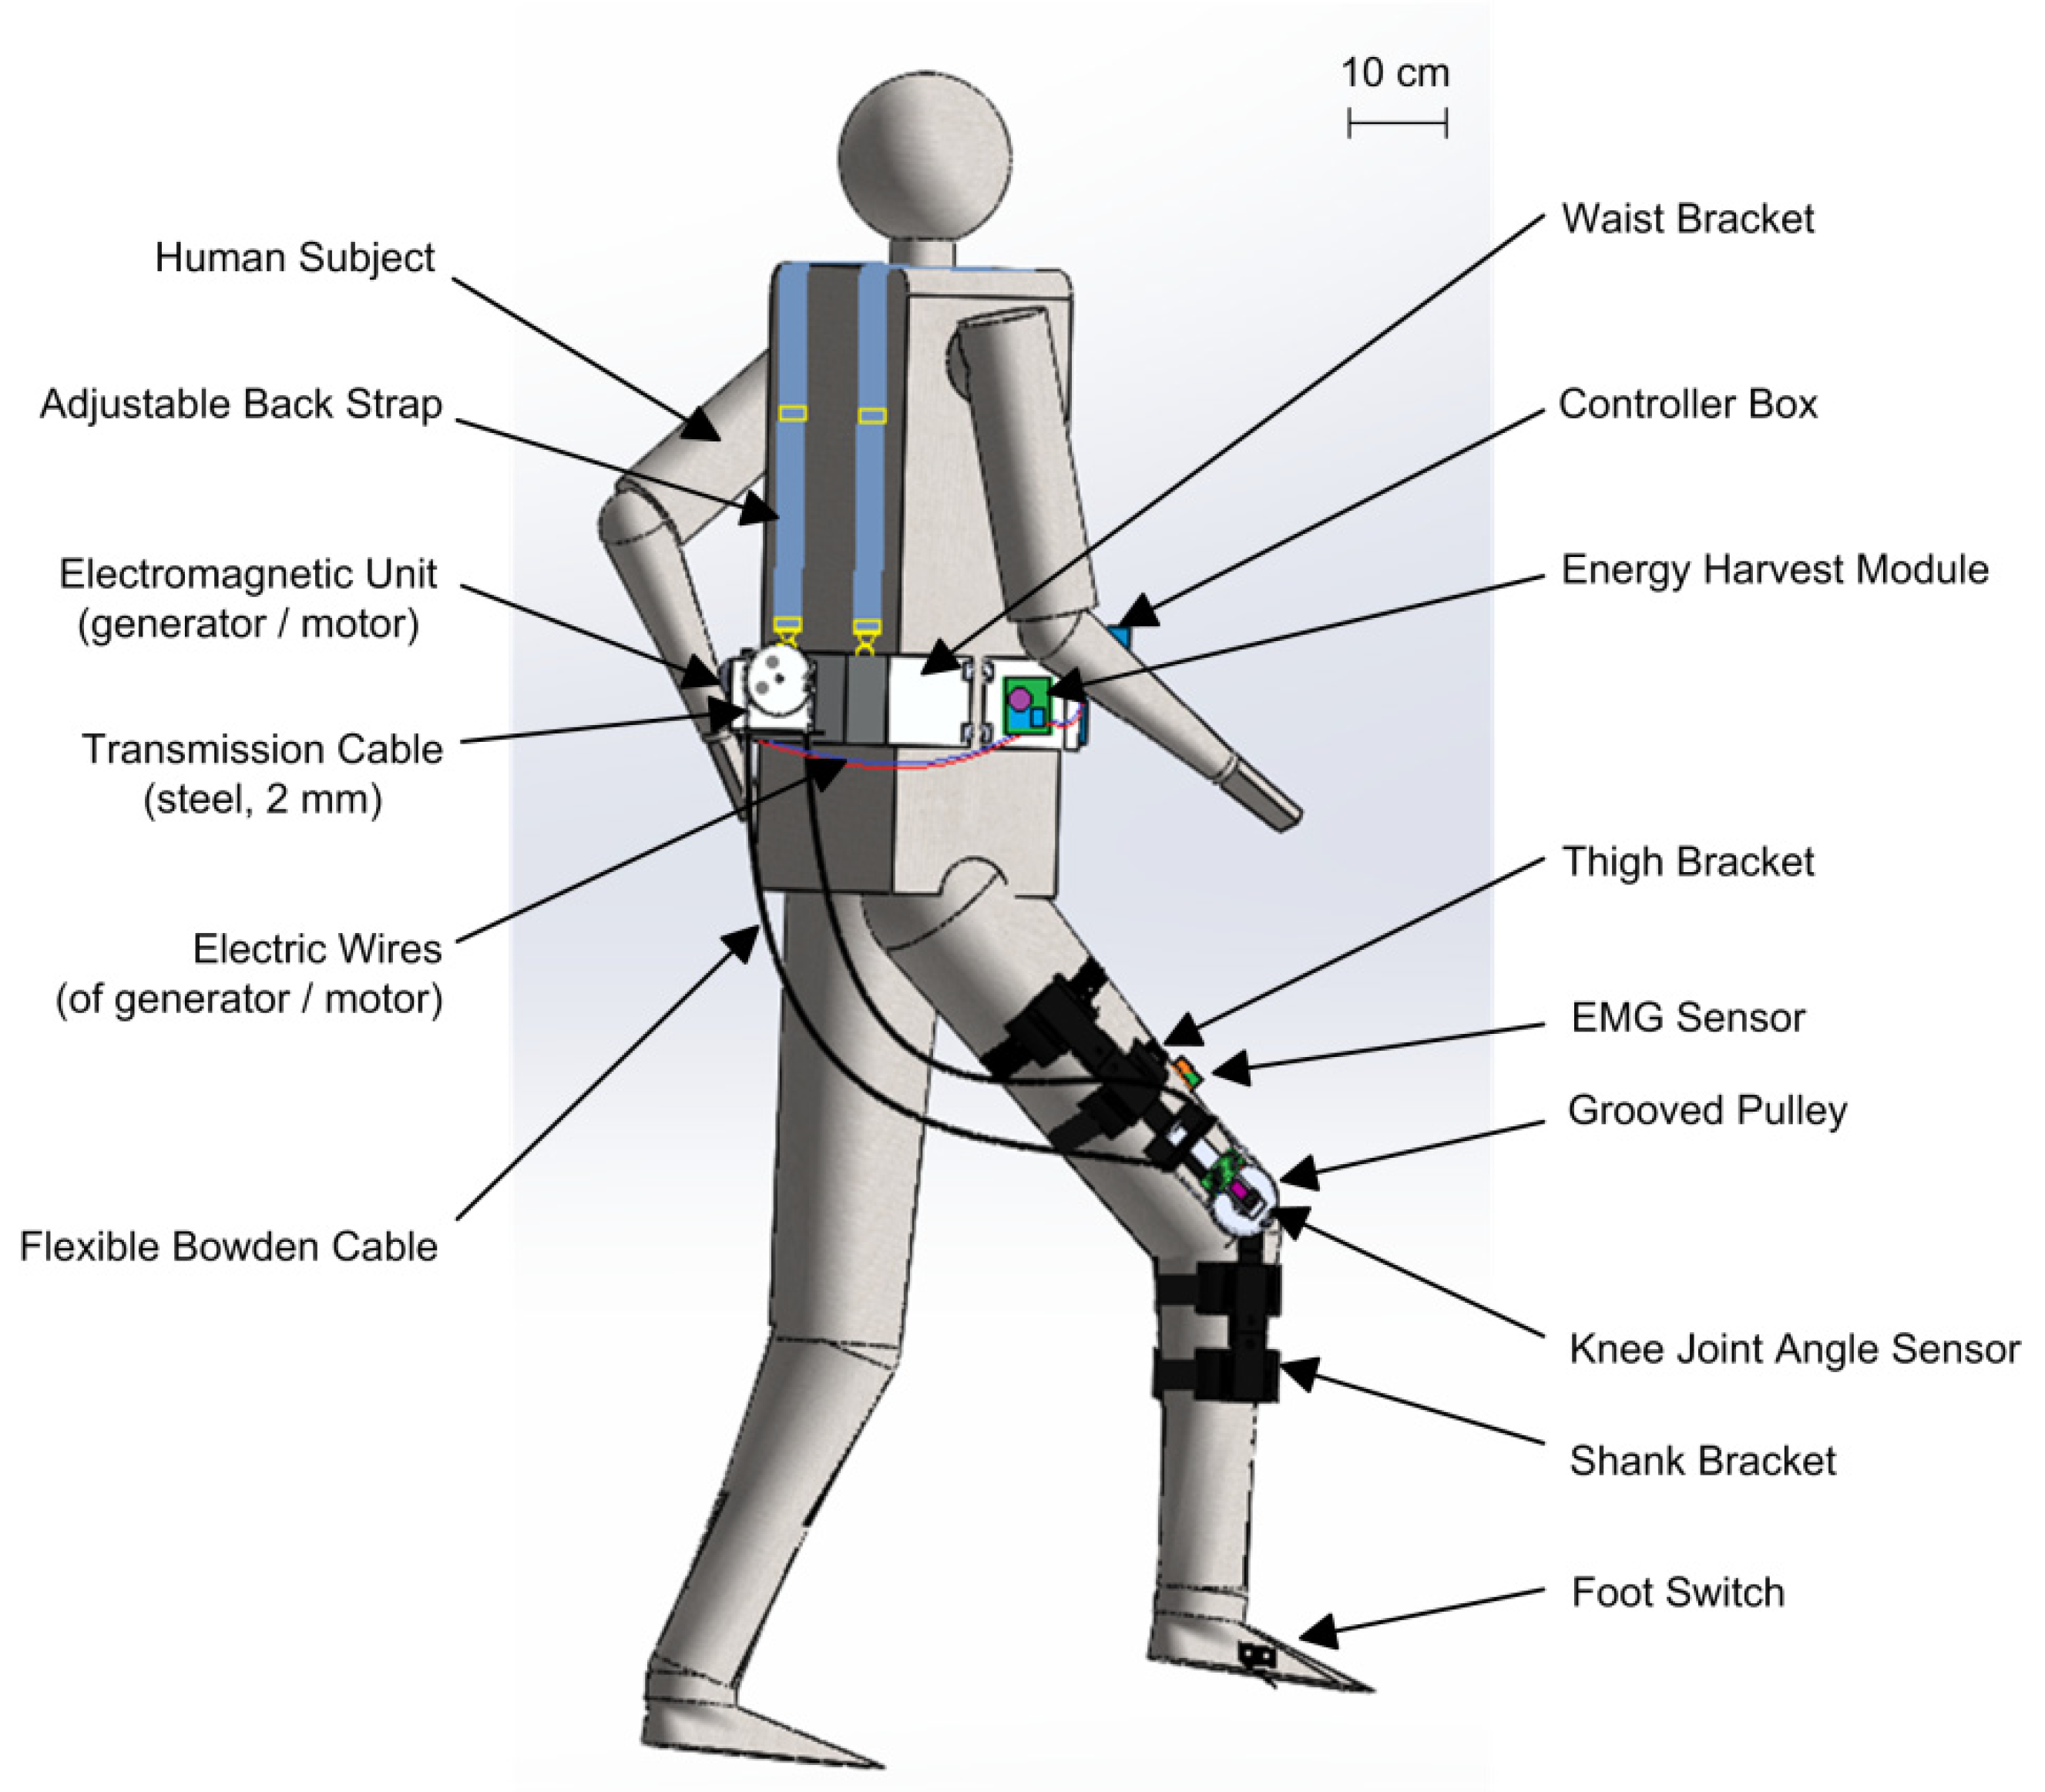 Heat-Resistant Wooden Robotic Gripper Bucks the Trend